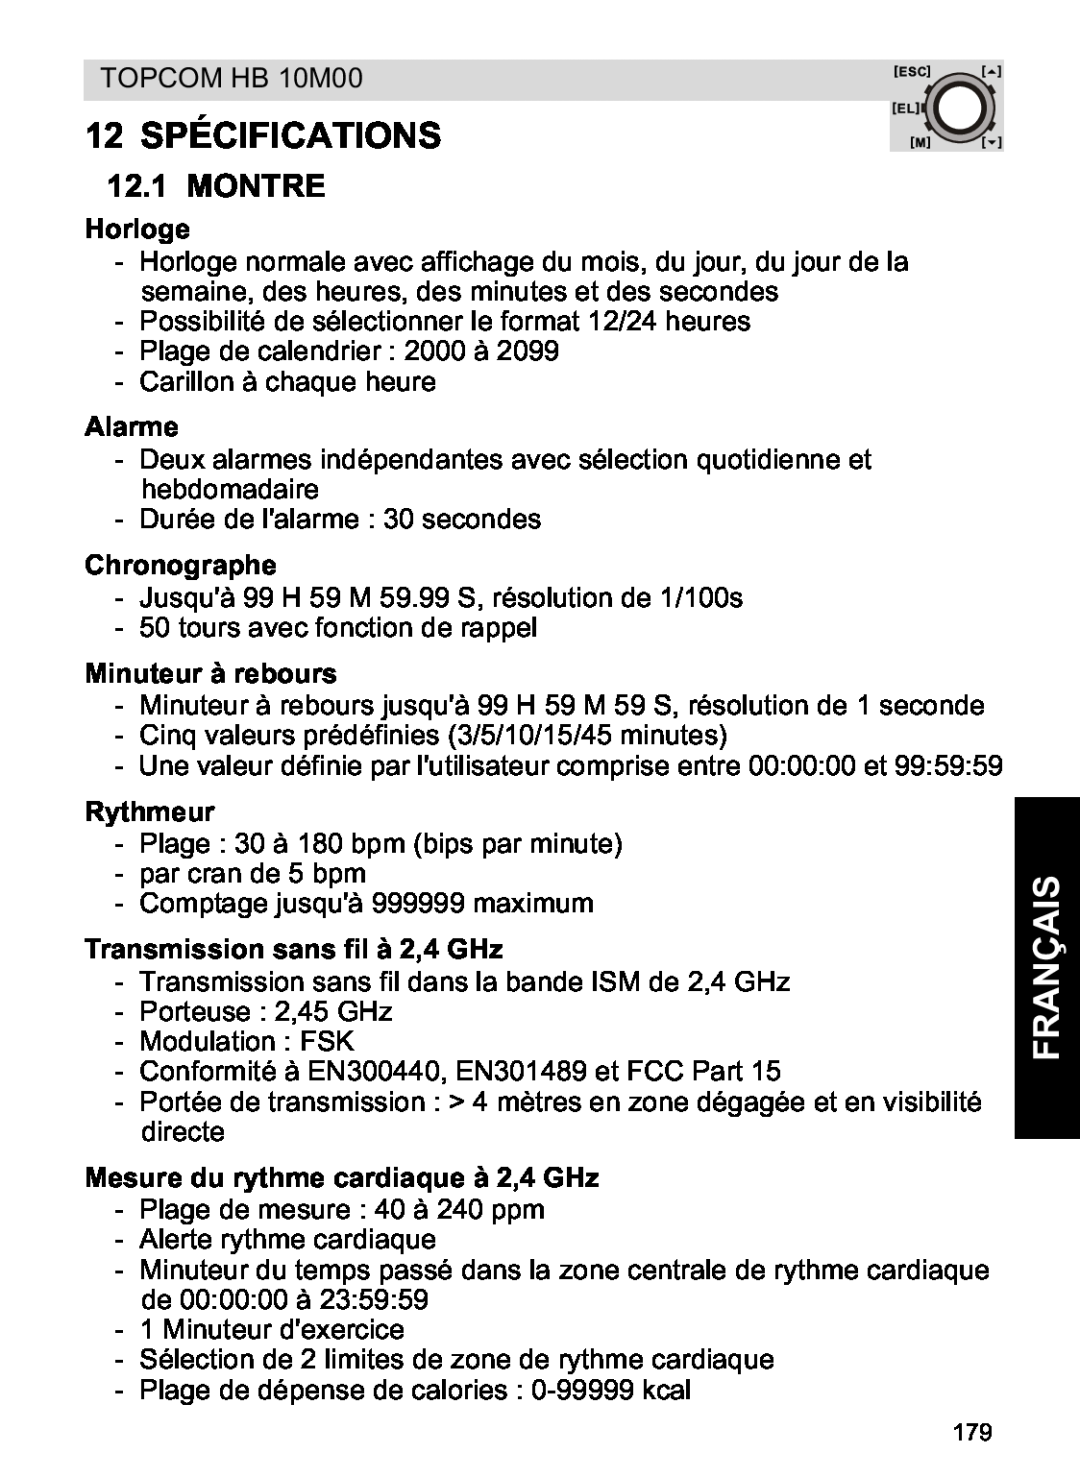 Topcom HB 10M00 manual 12 SPÉCIFICATIONS, Montre, Horloge, Alarme, Chronographe, Minuteur à rebours, Rythmeur, Français 